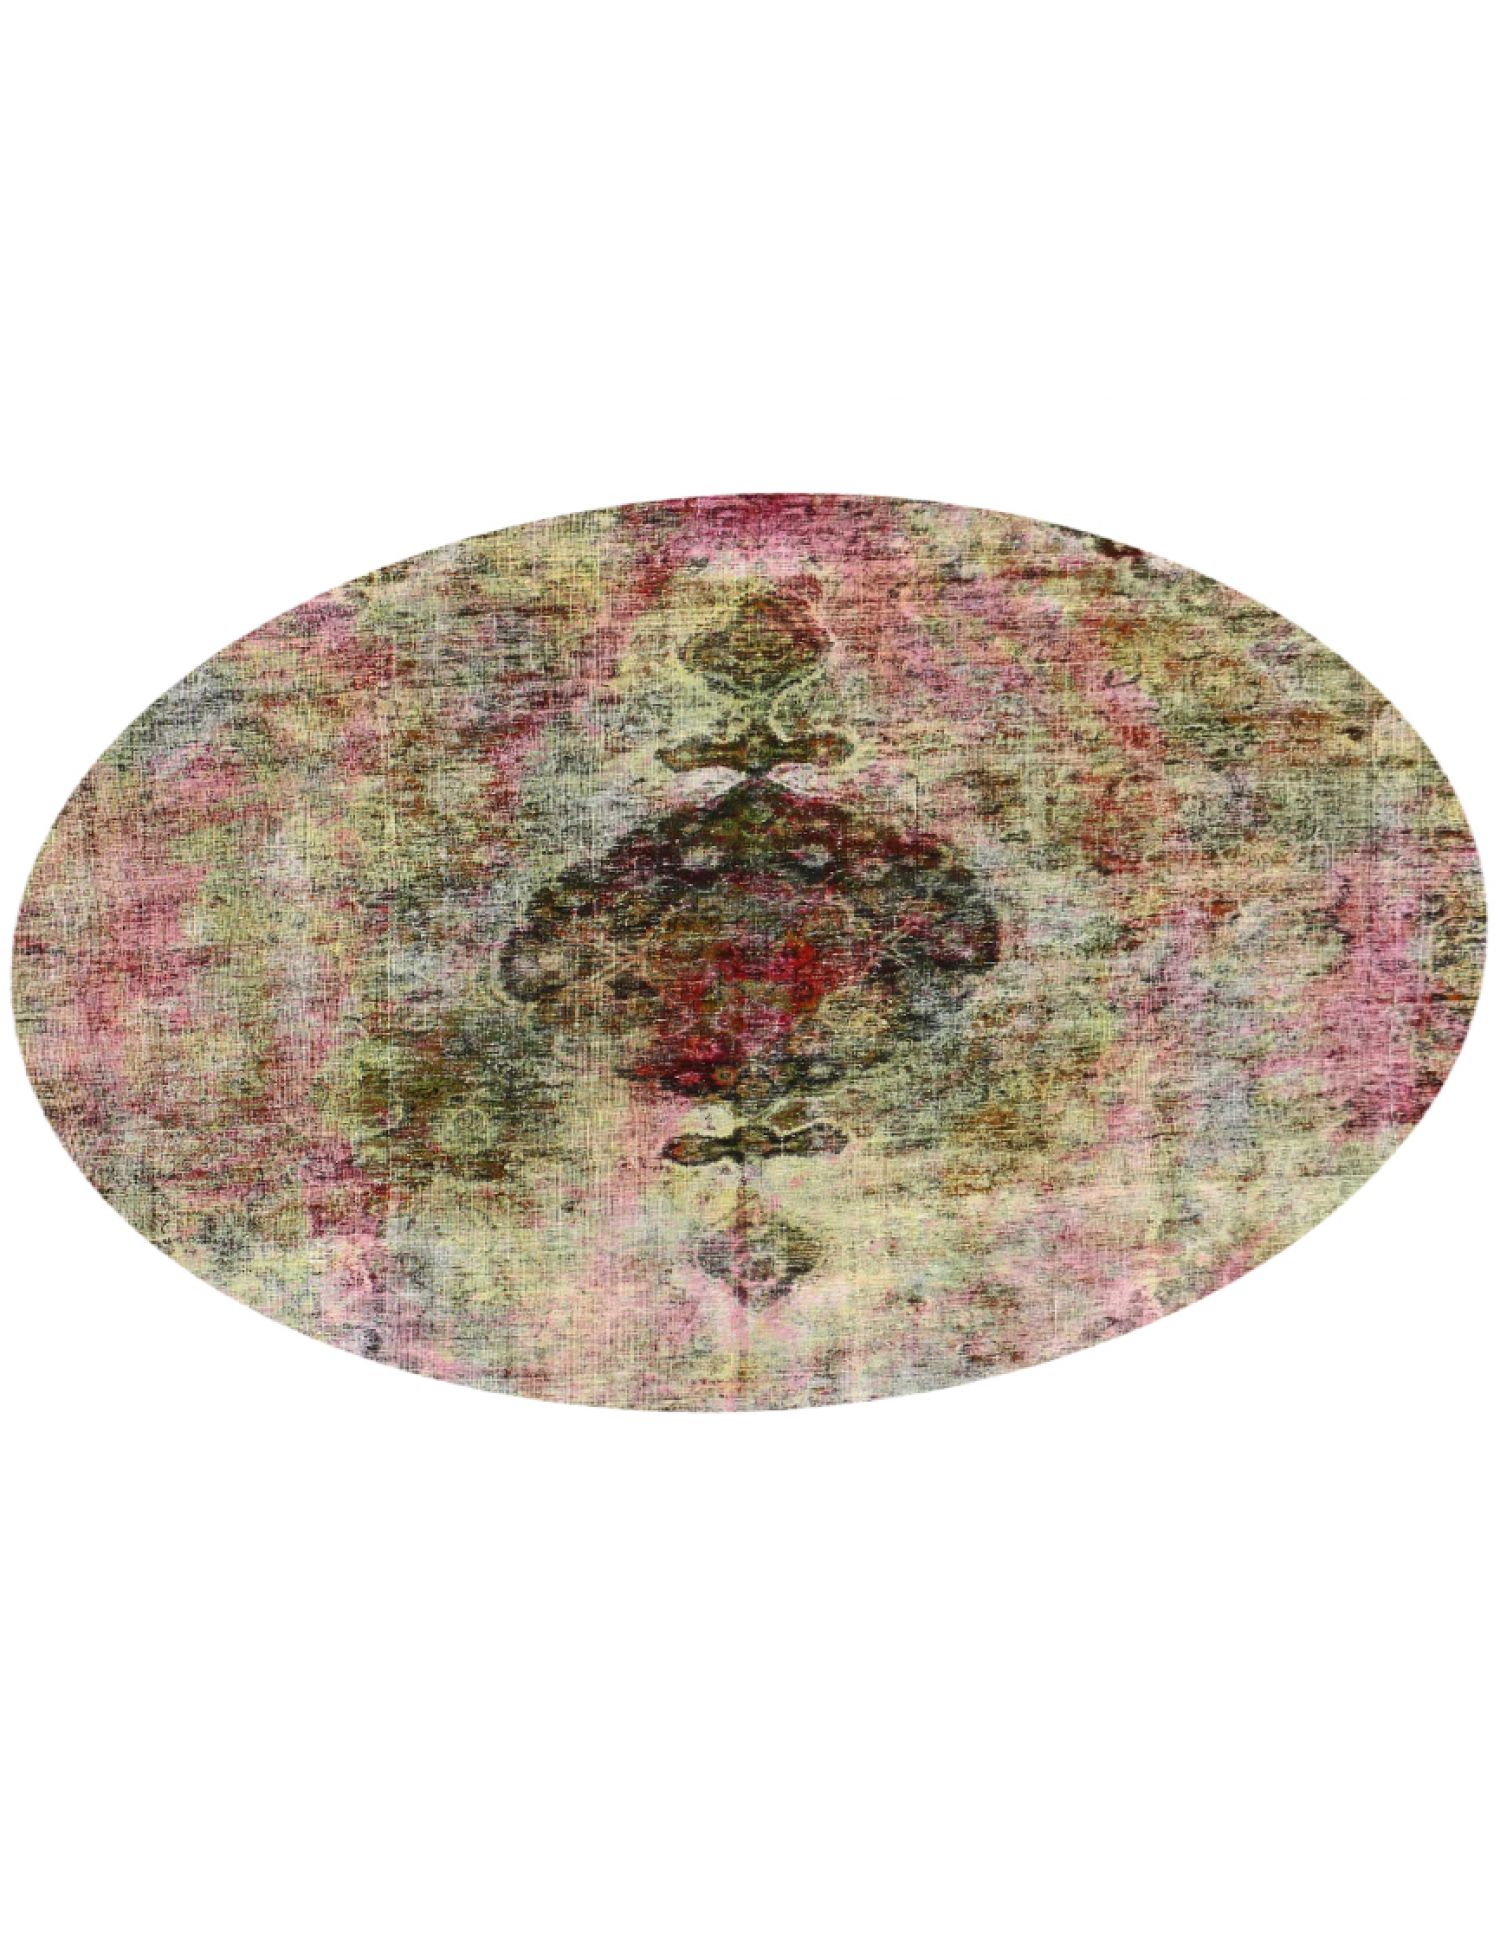 Vintage Teppich rund  mehrfarbig <br/>246 x 246 cm